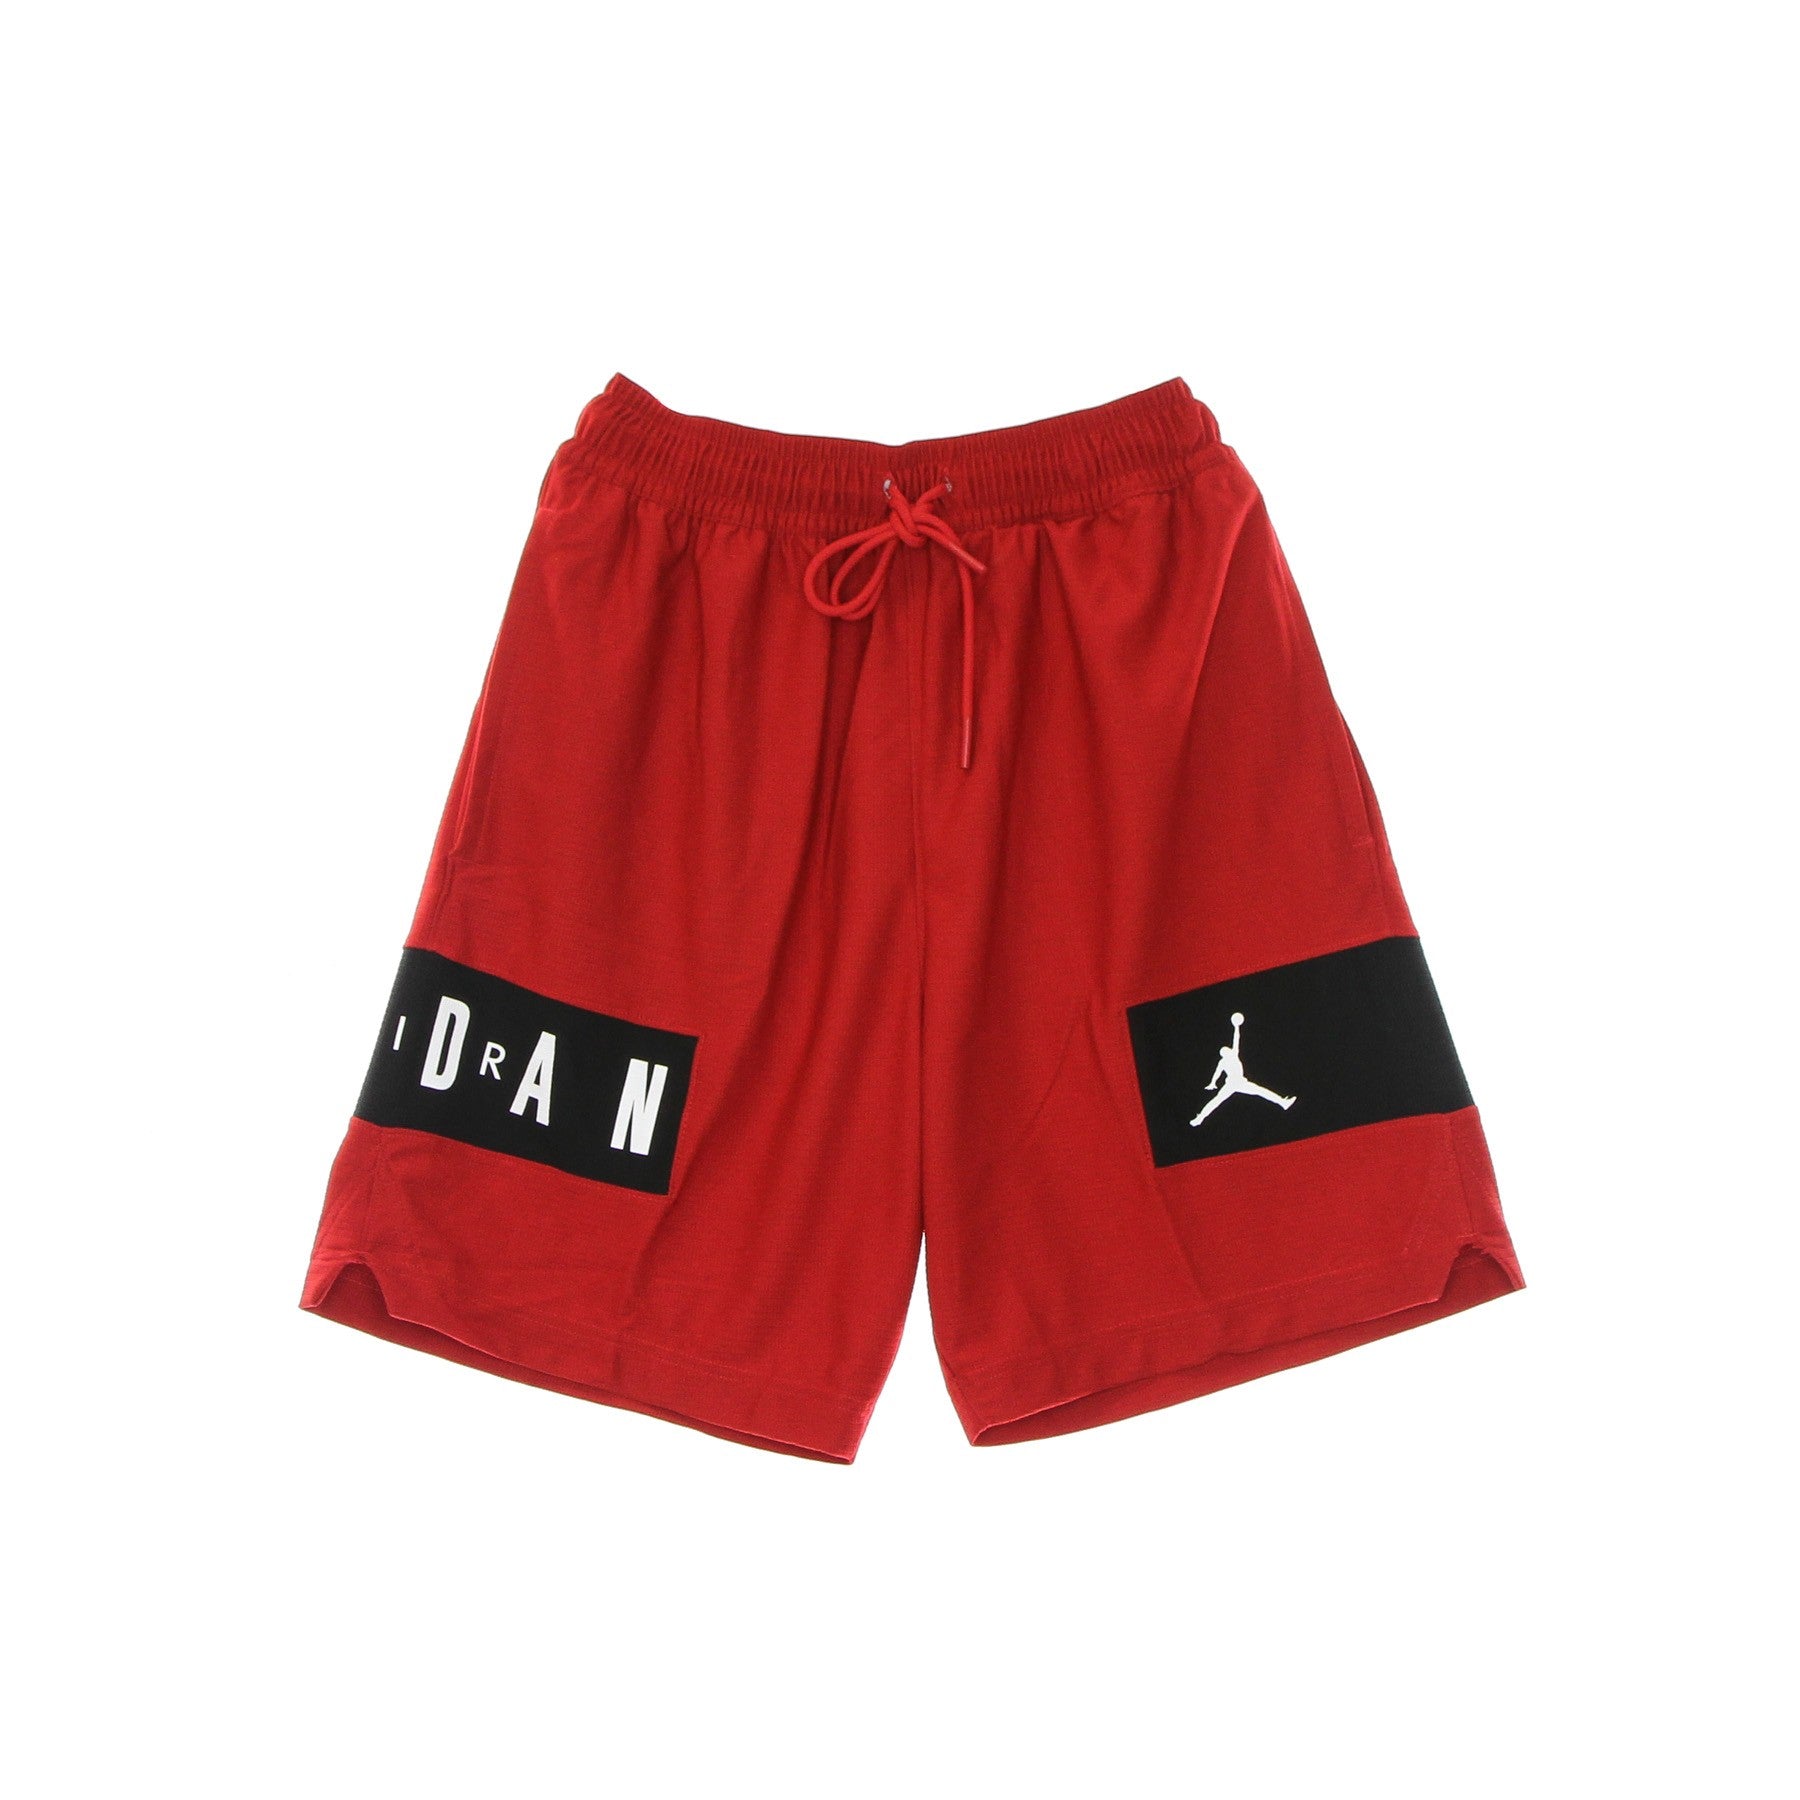 Jordan, Pantaloncino Tipo Basket Uomo Jordan Dri-fit Air Mesh Gfx Short, Gym Red/black/white